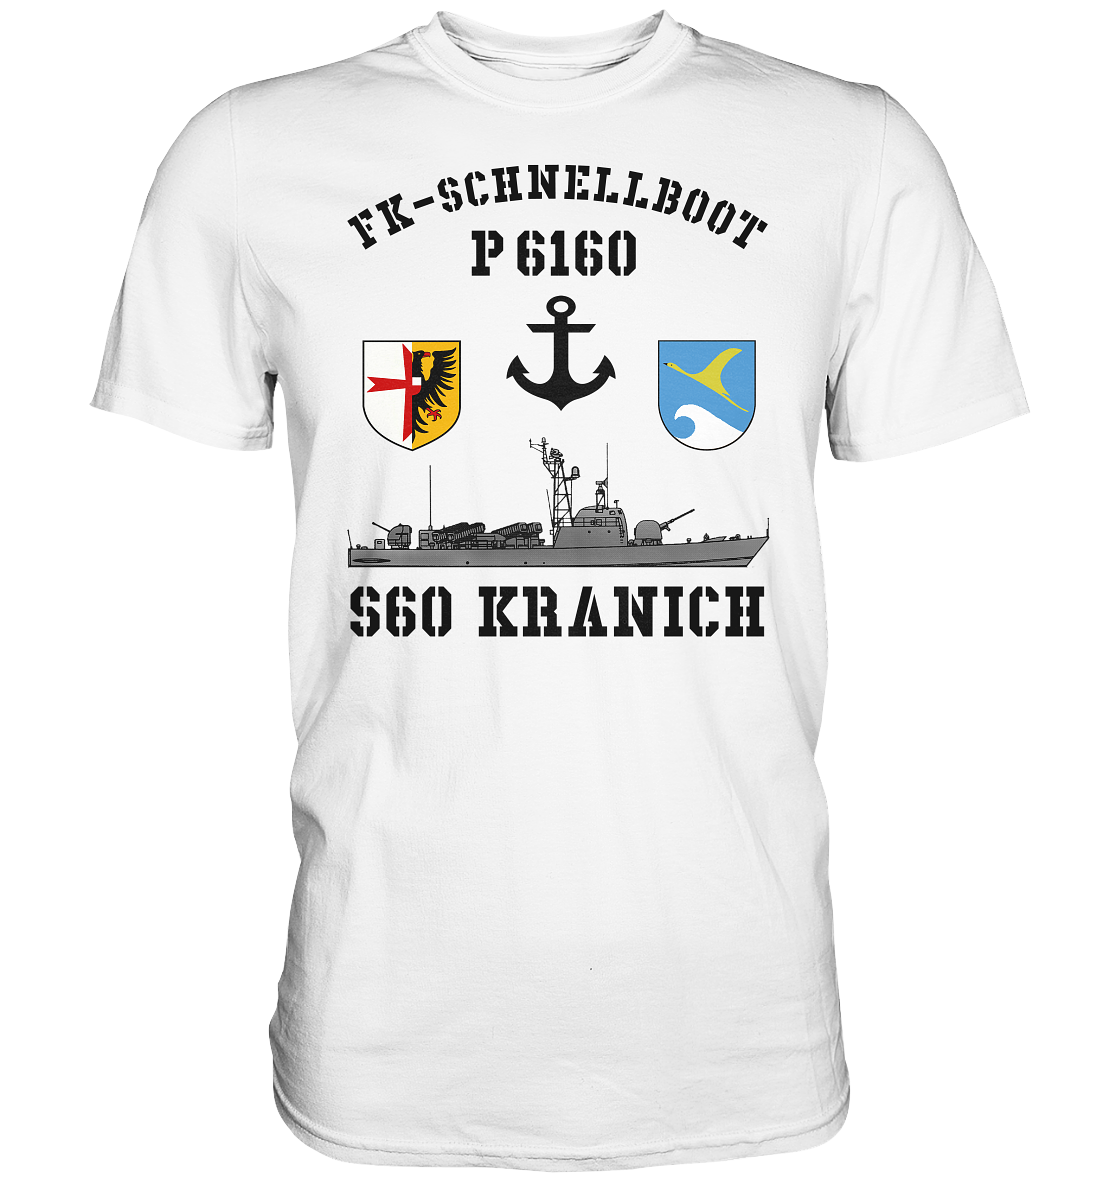 FK-Schnellboot P6160 KRANICH Anker - Premium Shirt